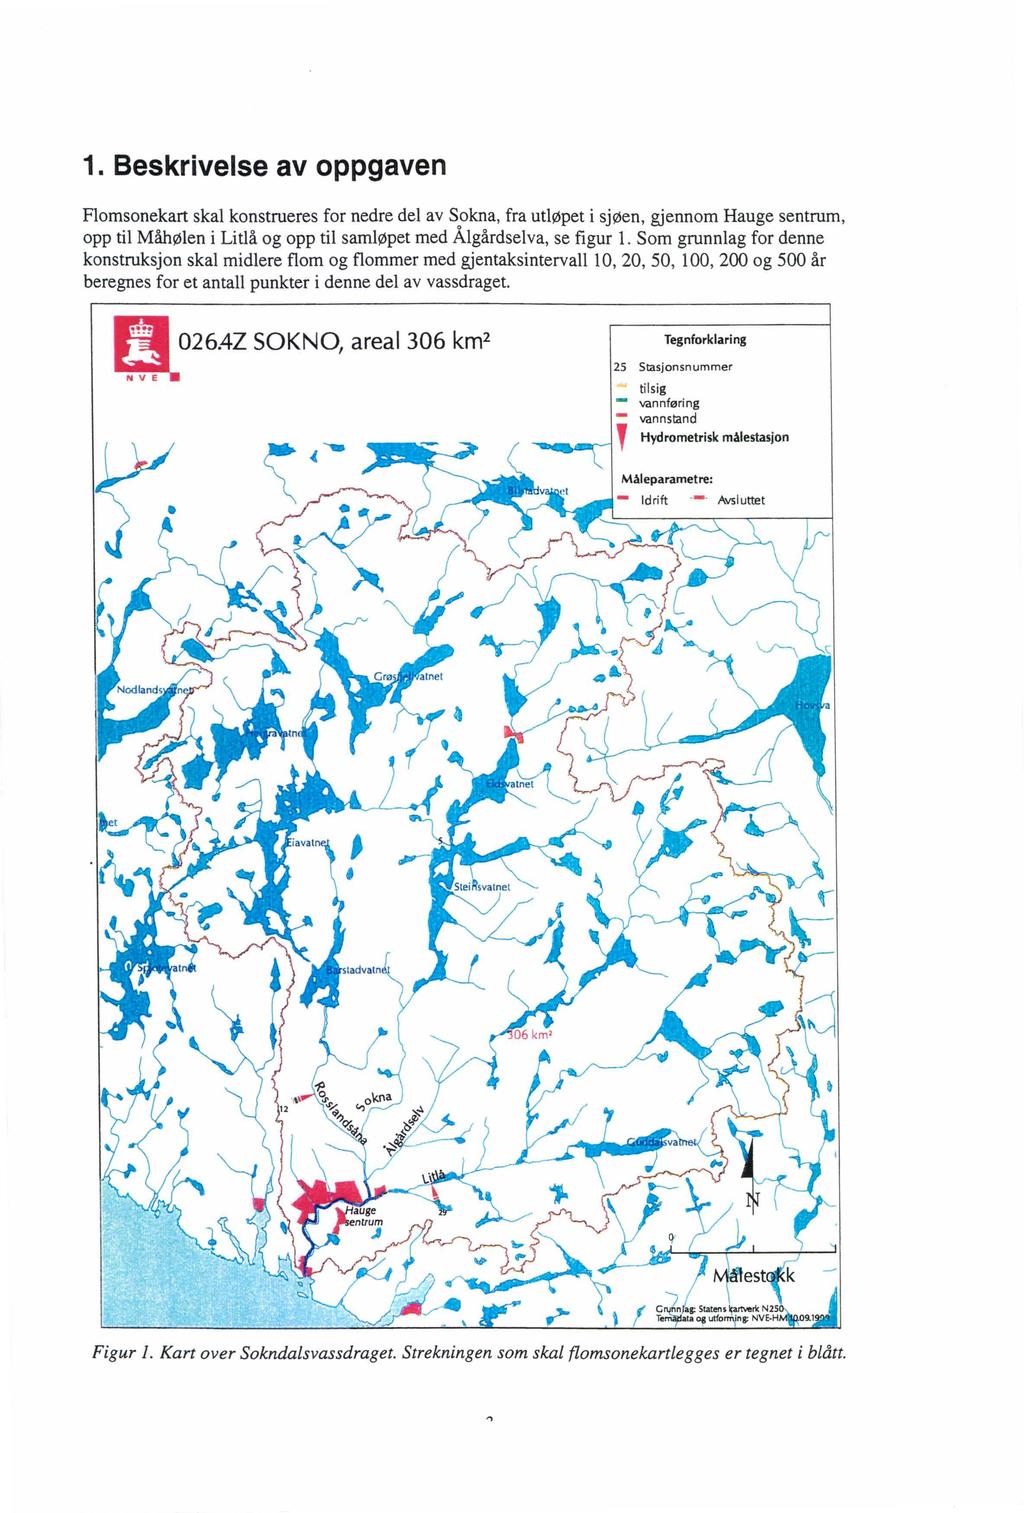 1. Beskrivelse av oppgaven Flomsonekart skal konstrueres for nedre del av Sokna, fra utløpet i sjøen, gjennom Hauge sentrum, opp til Måhølen i Litlå og opp til samløpet med Ålgårdselva, se figur l.